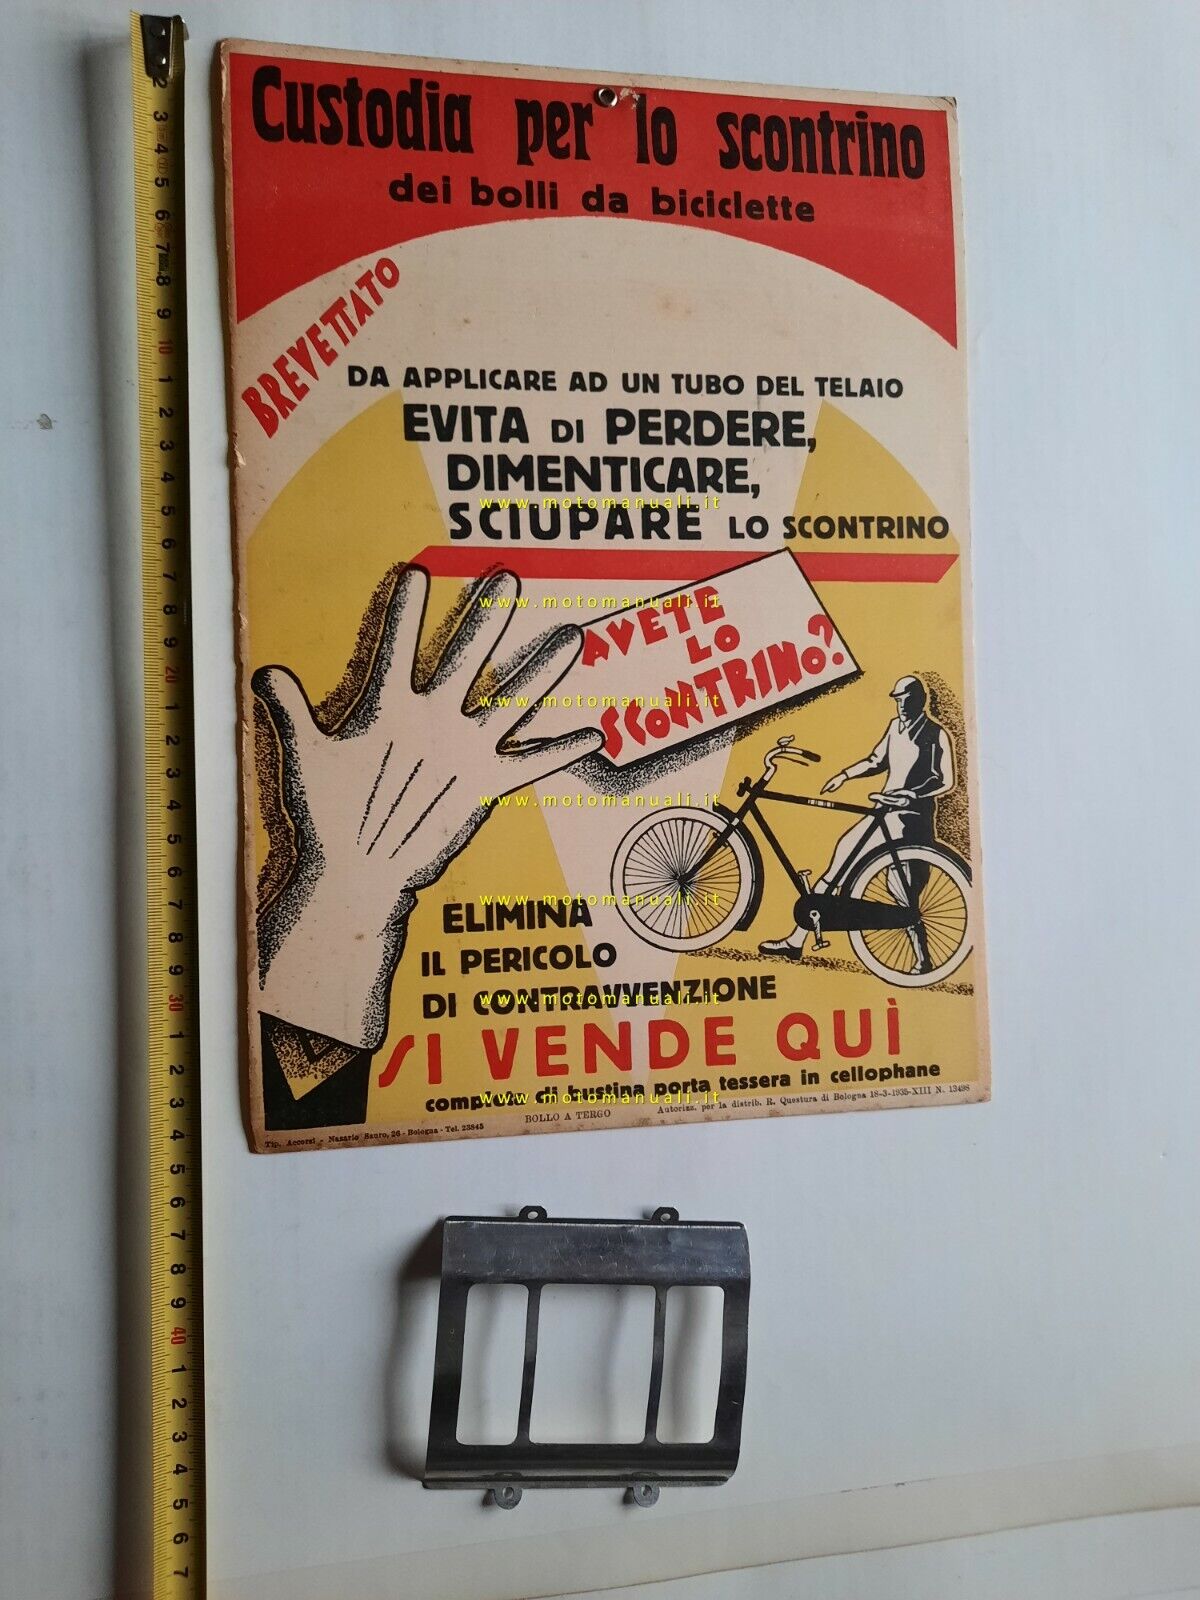  Custodia scontrino bollo biciclette insegna cartone originale 1935 cartello 